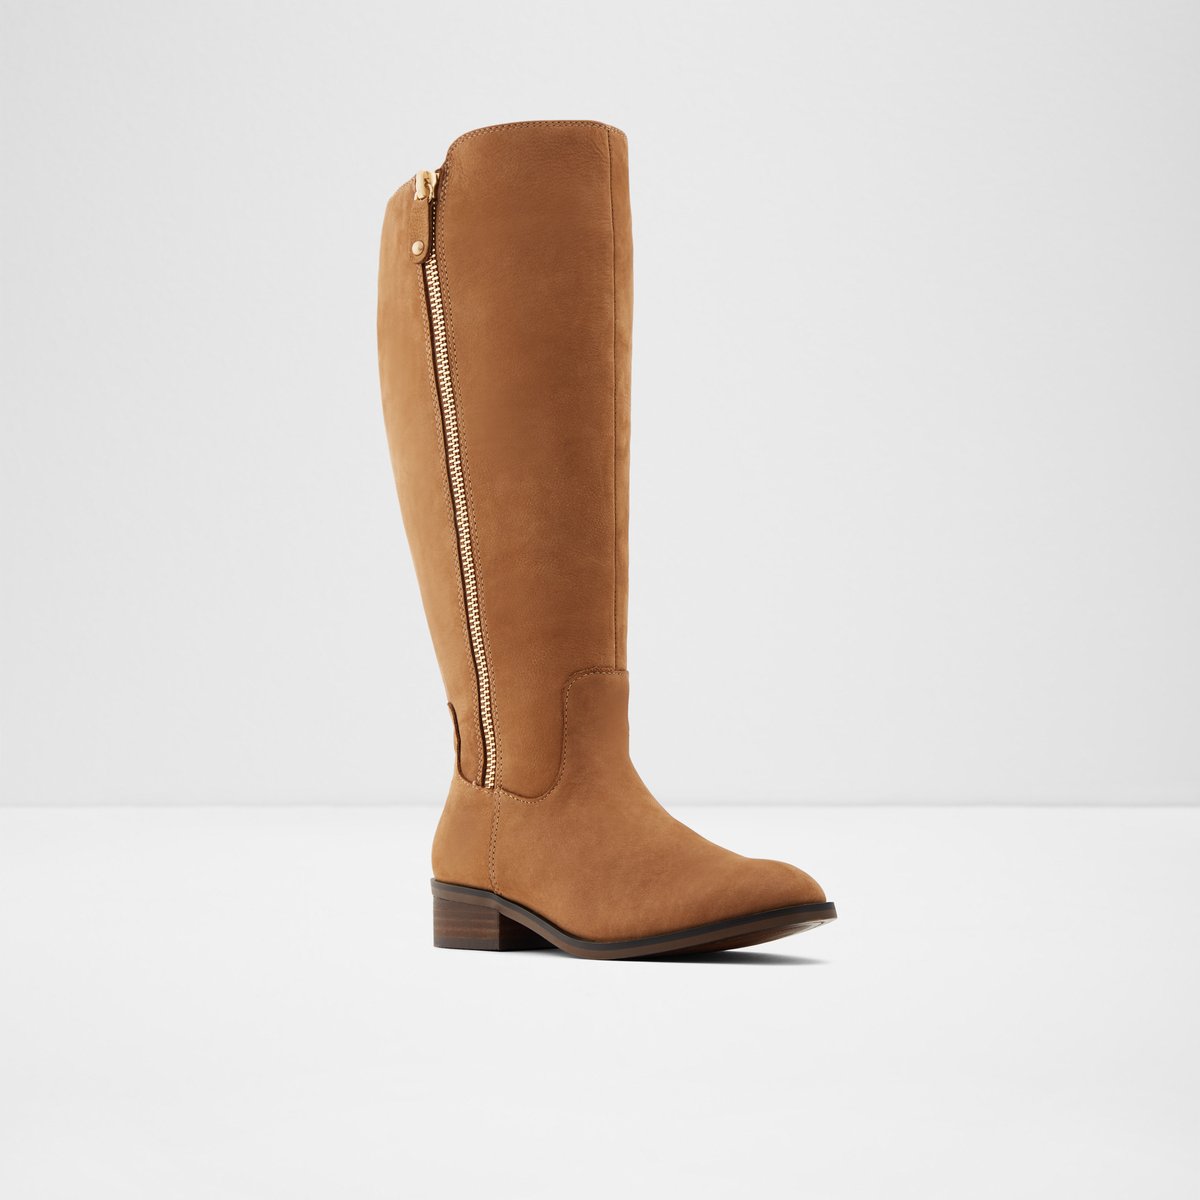 Gaenna-wc Medium Brown Women's Boots 